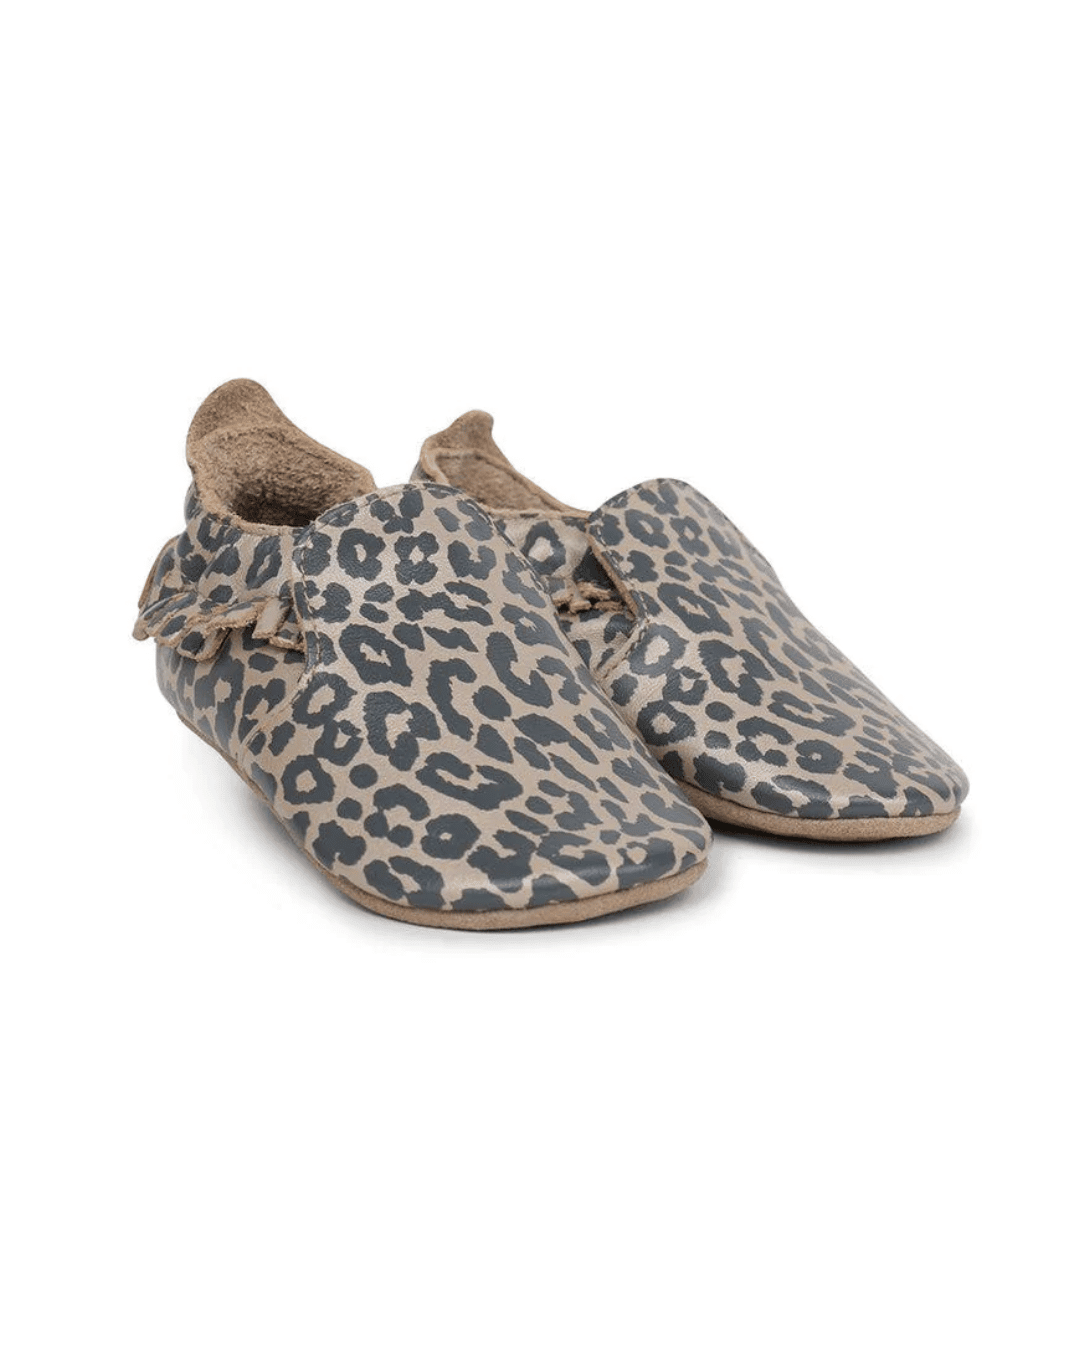 Soft Sole Leopard Print Shoes